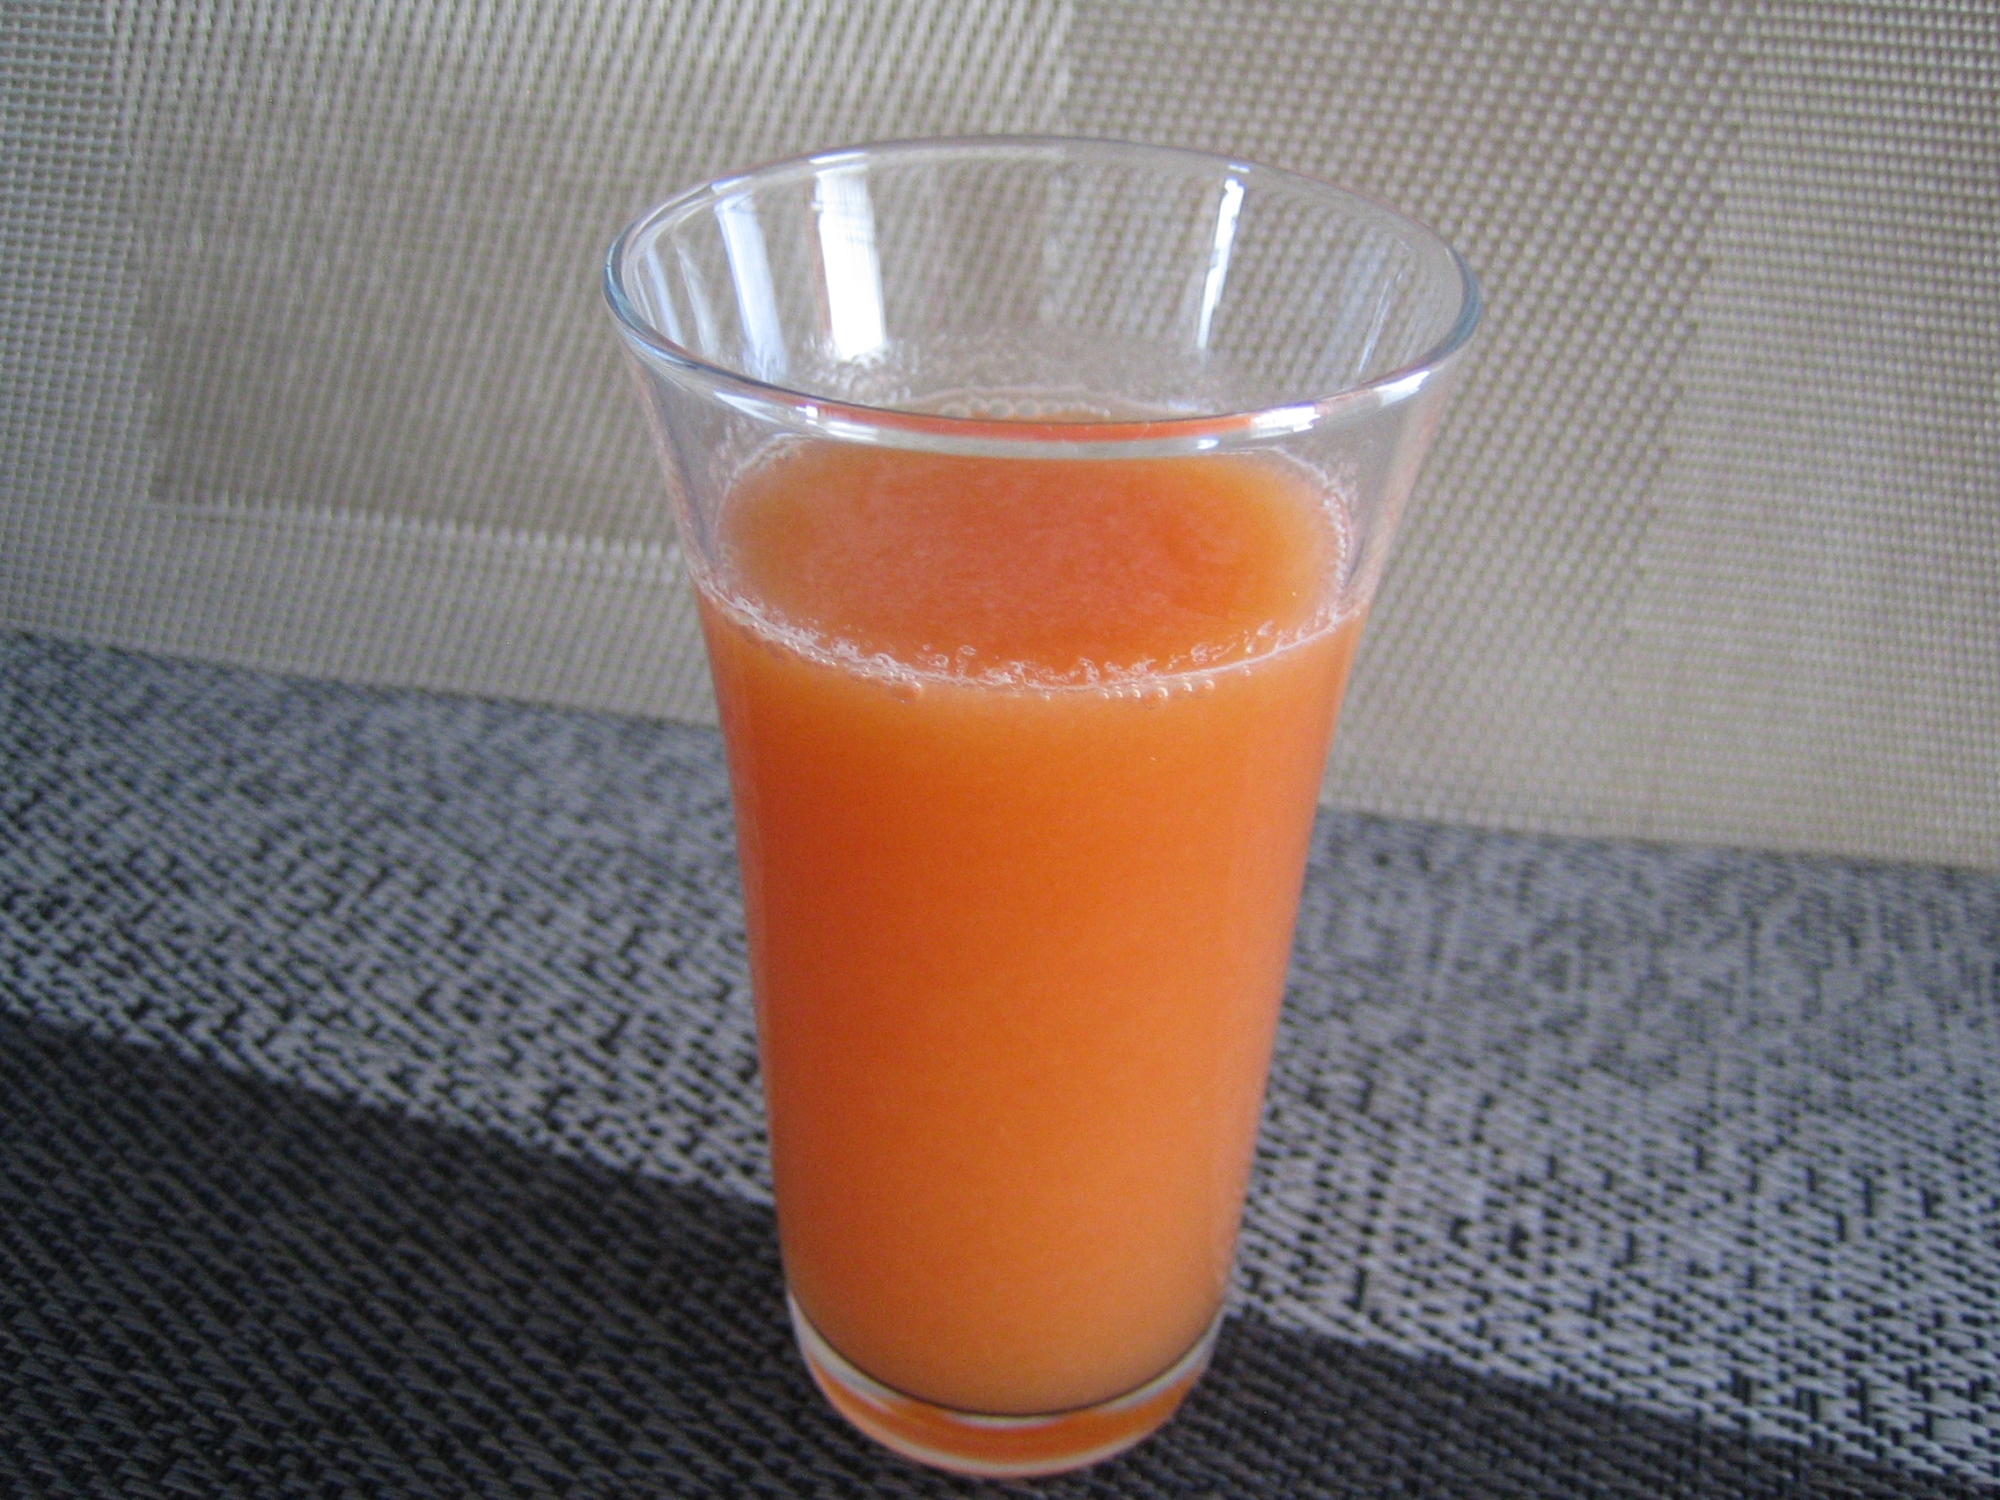 透明なグラスに入っている、オレンジ色のコールドプレスジュース